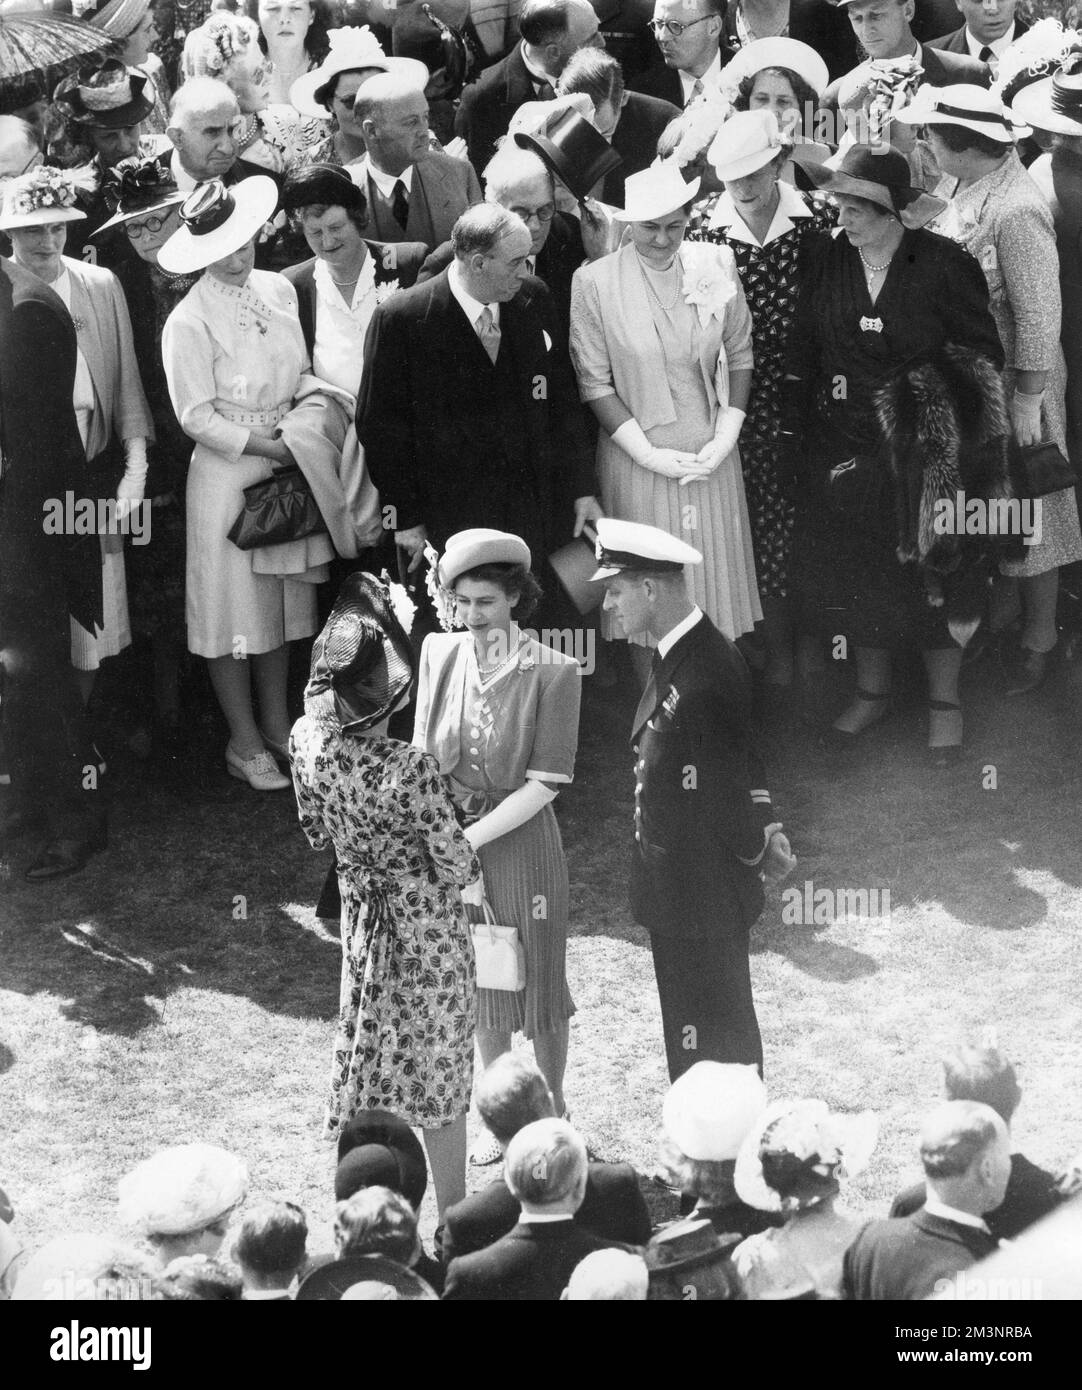 Le prince Elizabeth (reine Elizabeth II) et son lieutenant Philip Mountbatten discutant avec des invités lors d'une fête dans le jardin sur le terrain de Buckingham Palace en juillet 1947, peu après l'annonce de leur engagement. Date: 1947 Banque D'Images